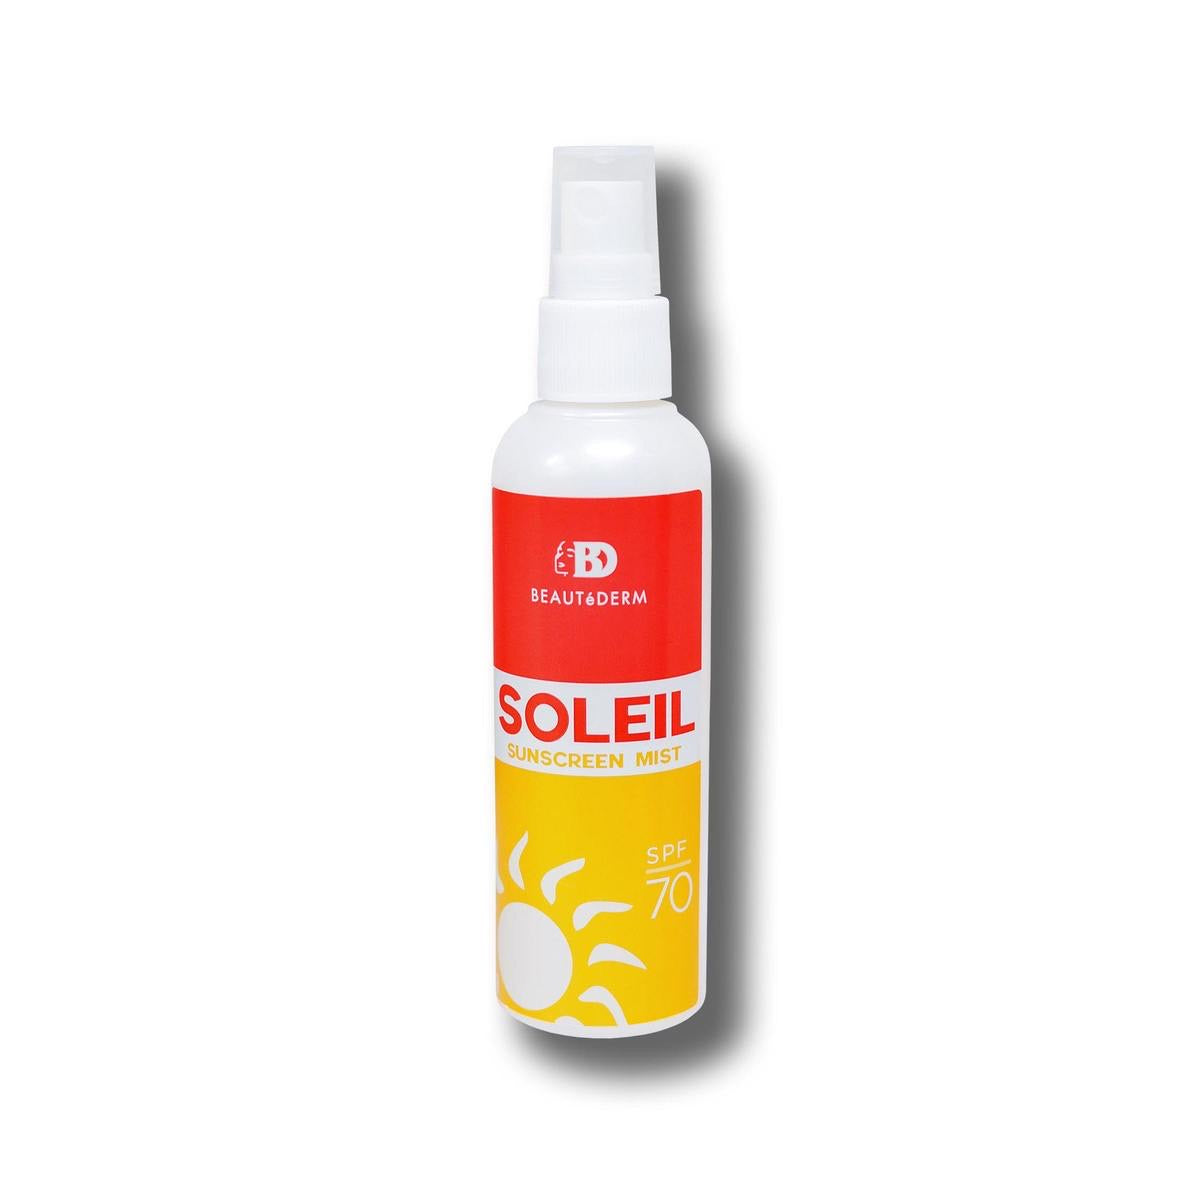 Beautederm Soleil Sunscreen Mist 50ml